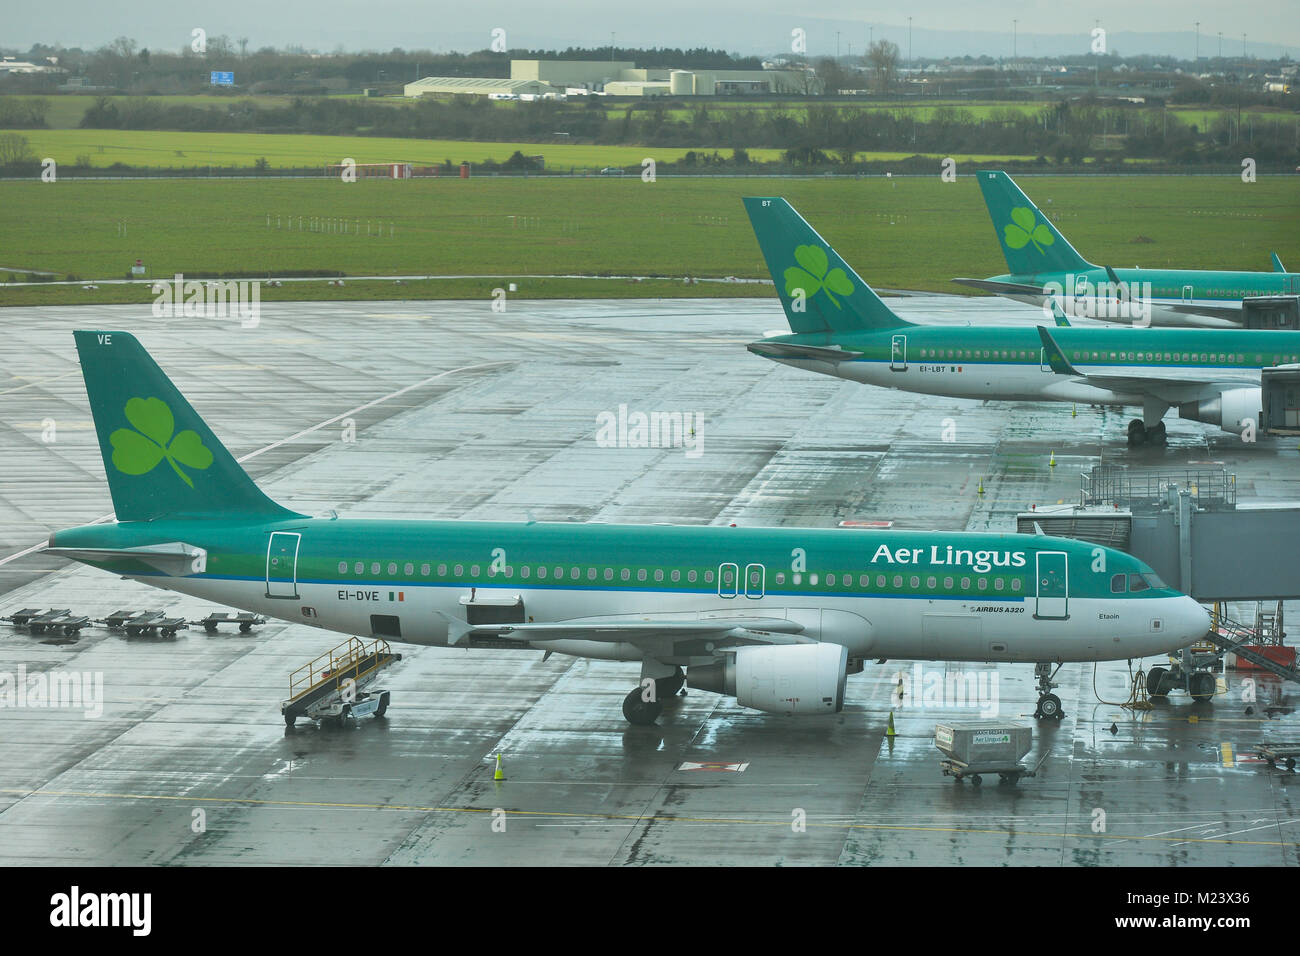 Una vista general de Aer Lingues aviones en el aeropuerto de Dublín. Nueva directiva de la UE, la directiva del Nombre del Pasajero (PNR), será pronto i9mplemented en Irlanda, en relación a la base de datos de vuelos entre todos los países de la UE como parte de las medidas de seguridad. Crédito: ASWphoto/Alamy Live News Foto de stock